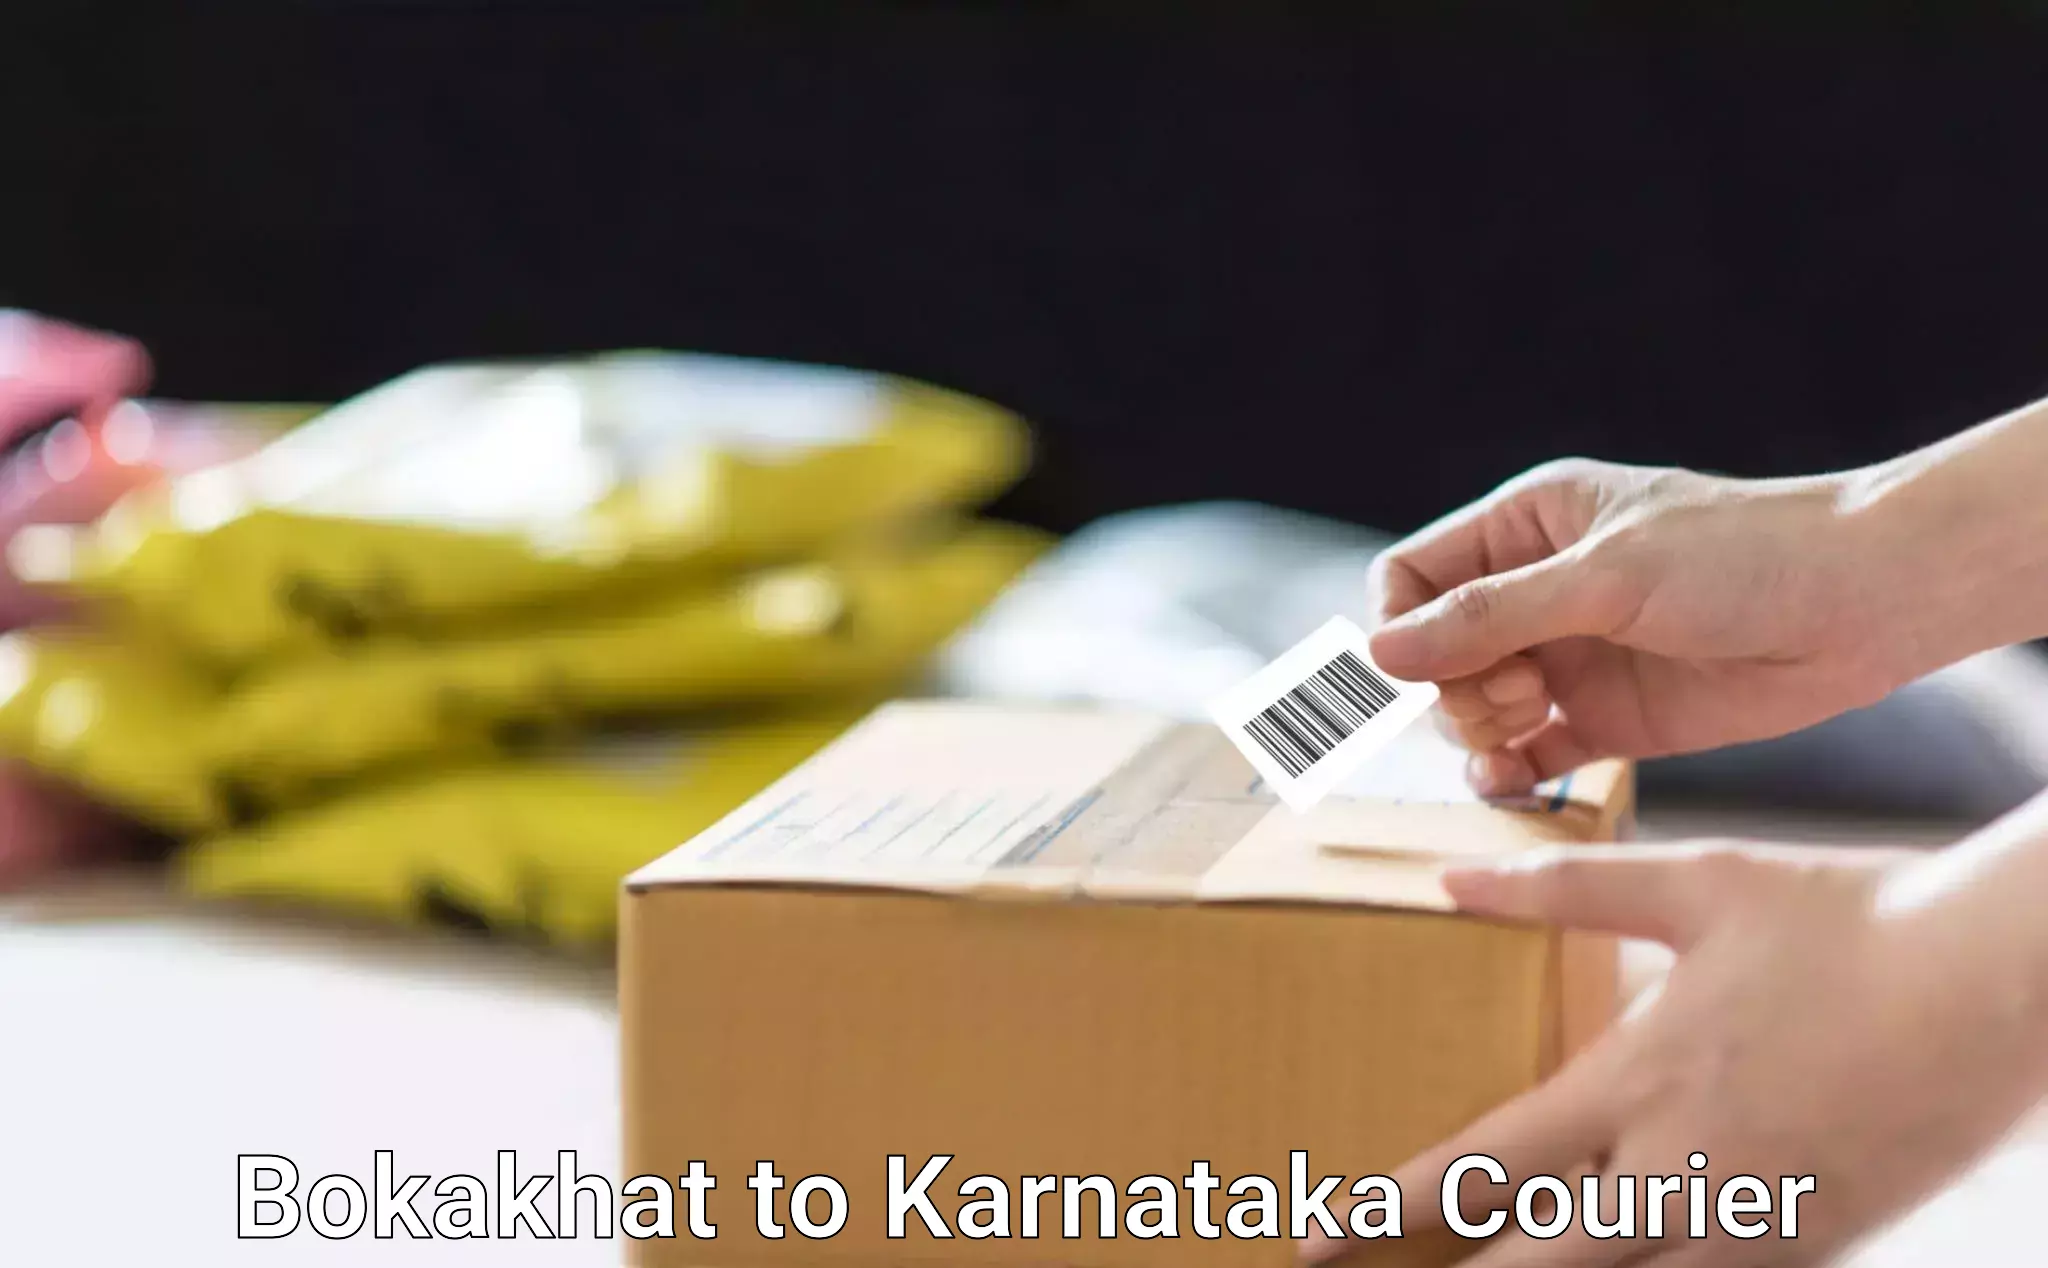 Speedy delivery service Bokakhat to Dakshina Kannada